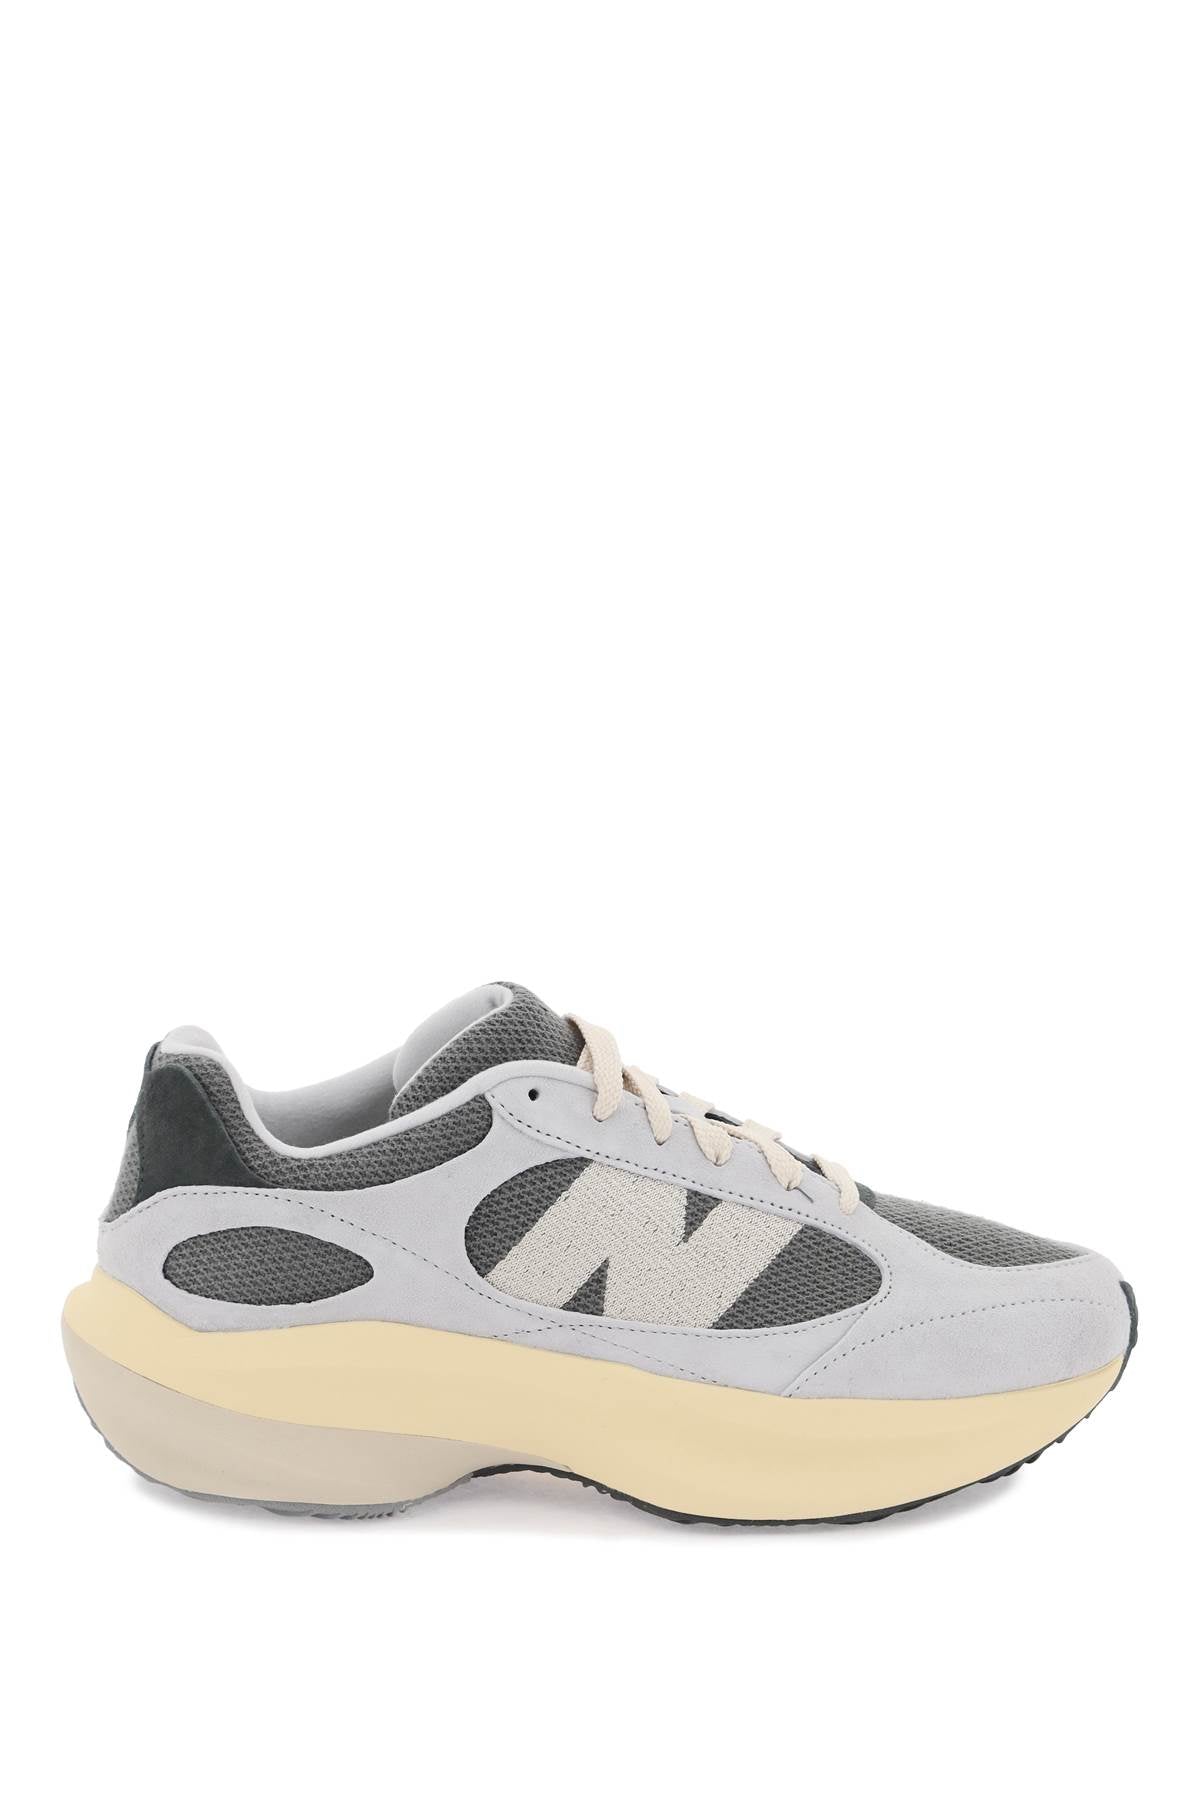 New Balance Wrpd 跑步運動鞋 UWRPDCON 灰色物質